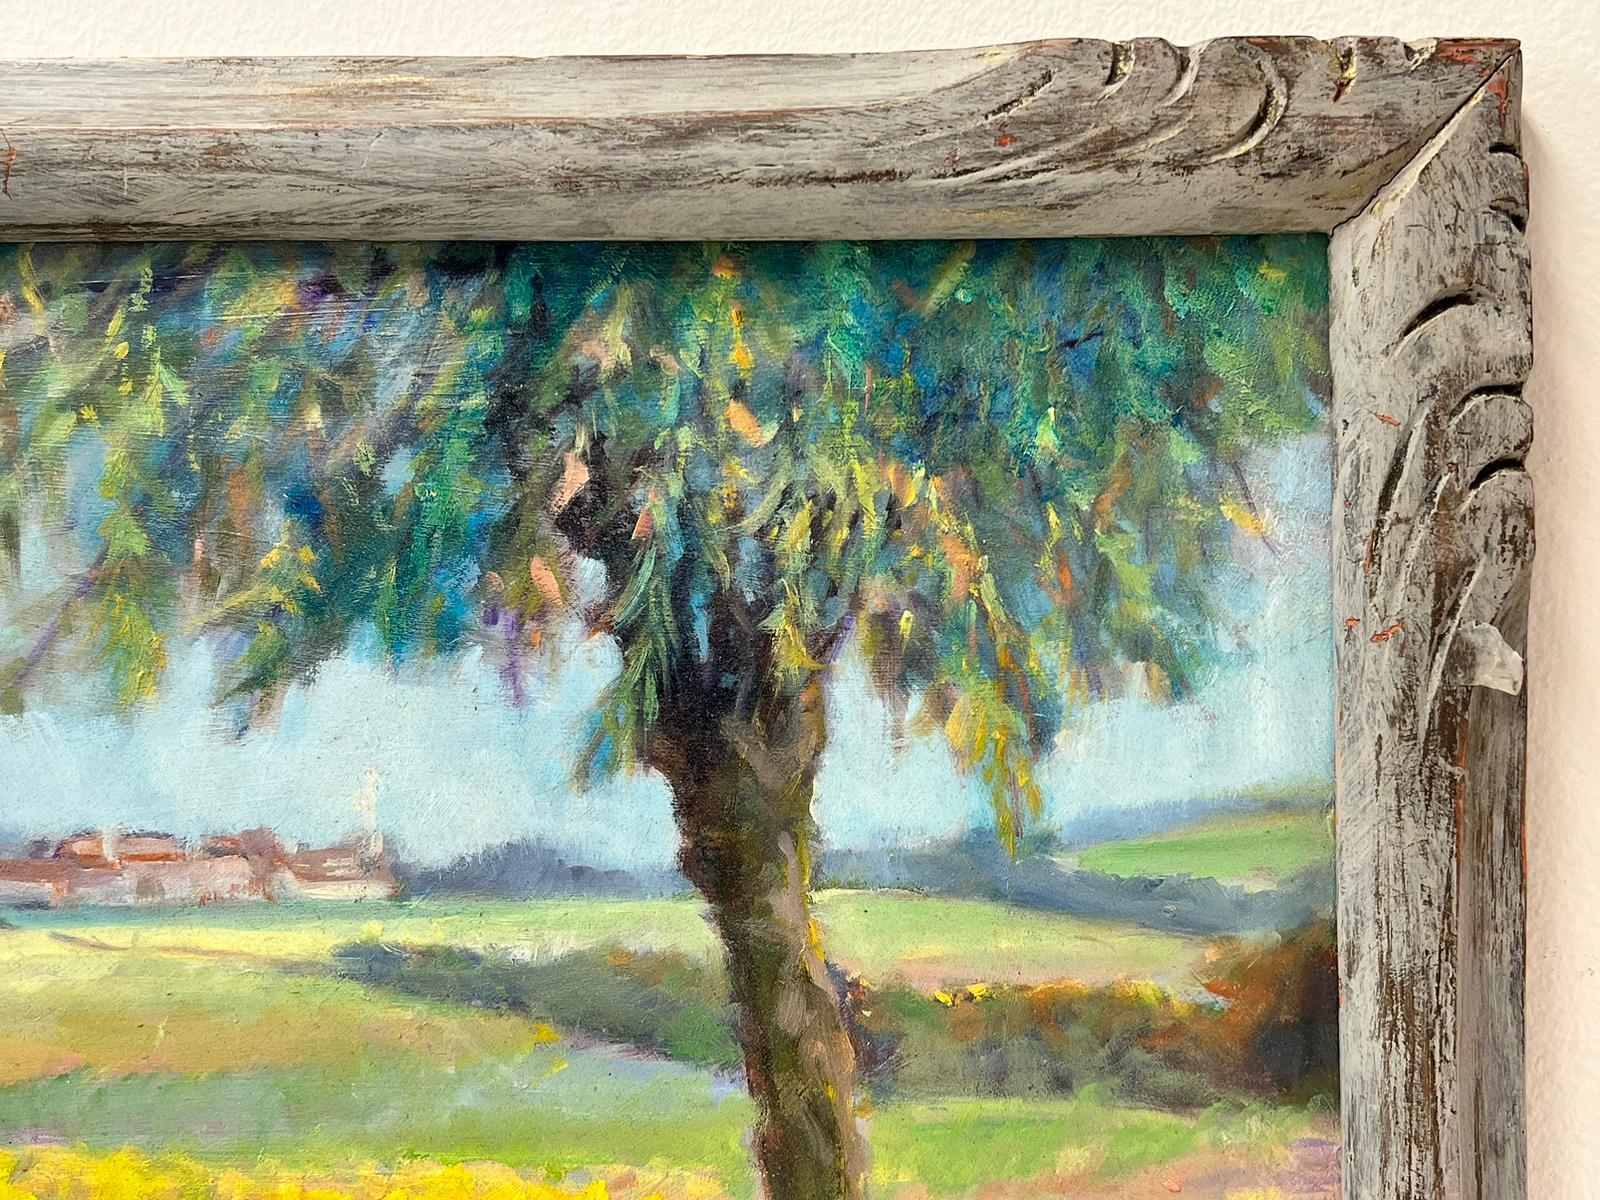 Auvers-sur-Oise France Golden Farm Fields Rural Landscape Signed Oil Painting For Sale 2